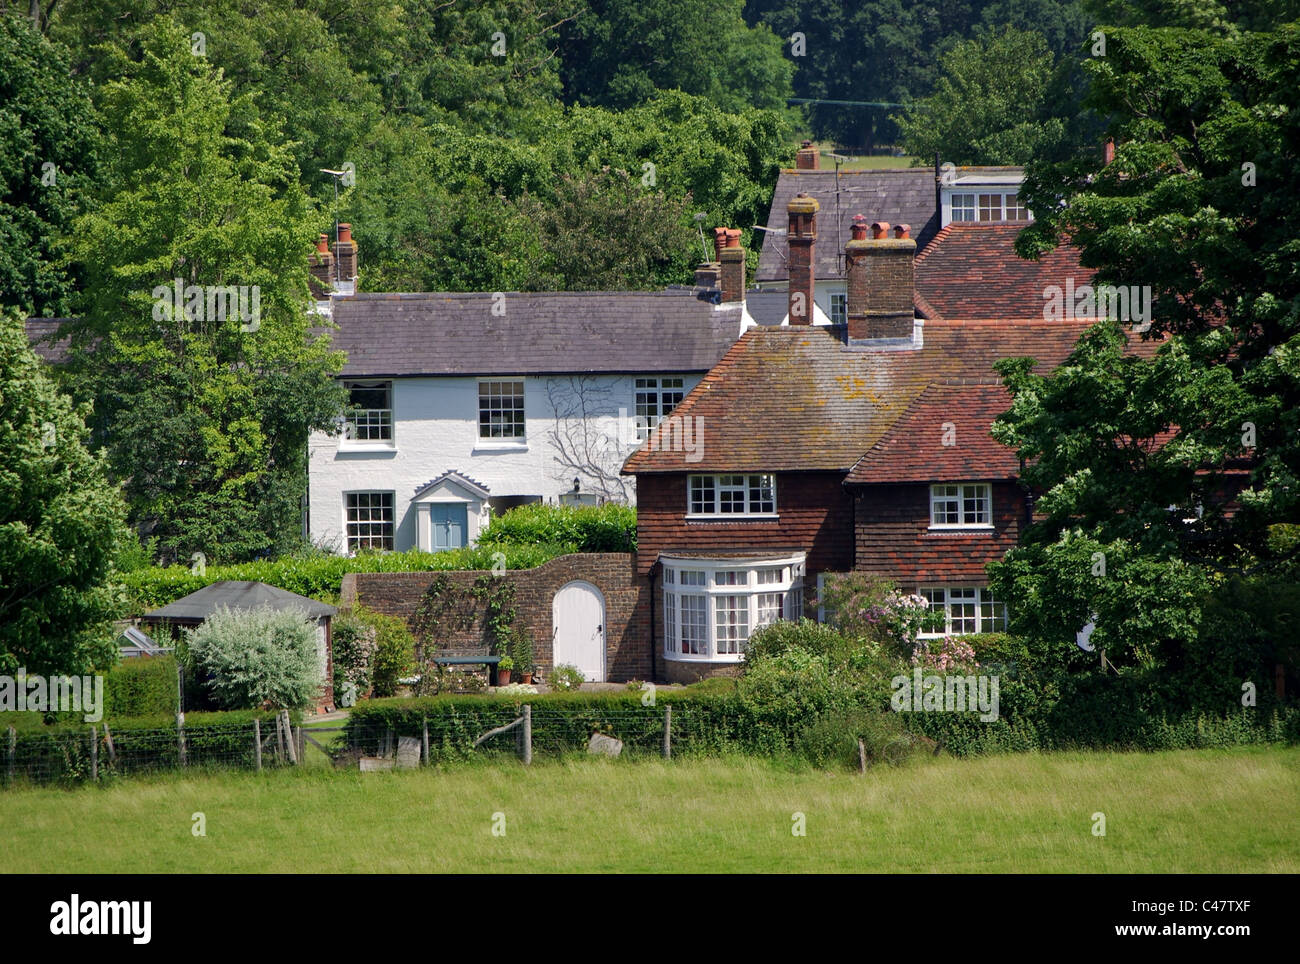 Wohnhäuser und Ferienhäuser in einer ländlichen Umgebung, Ditchling, East Sussex, England, UK Stockfoto